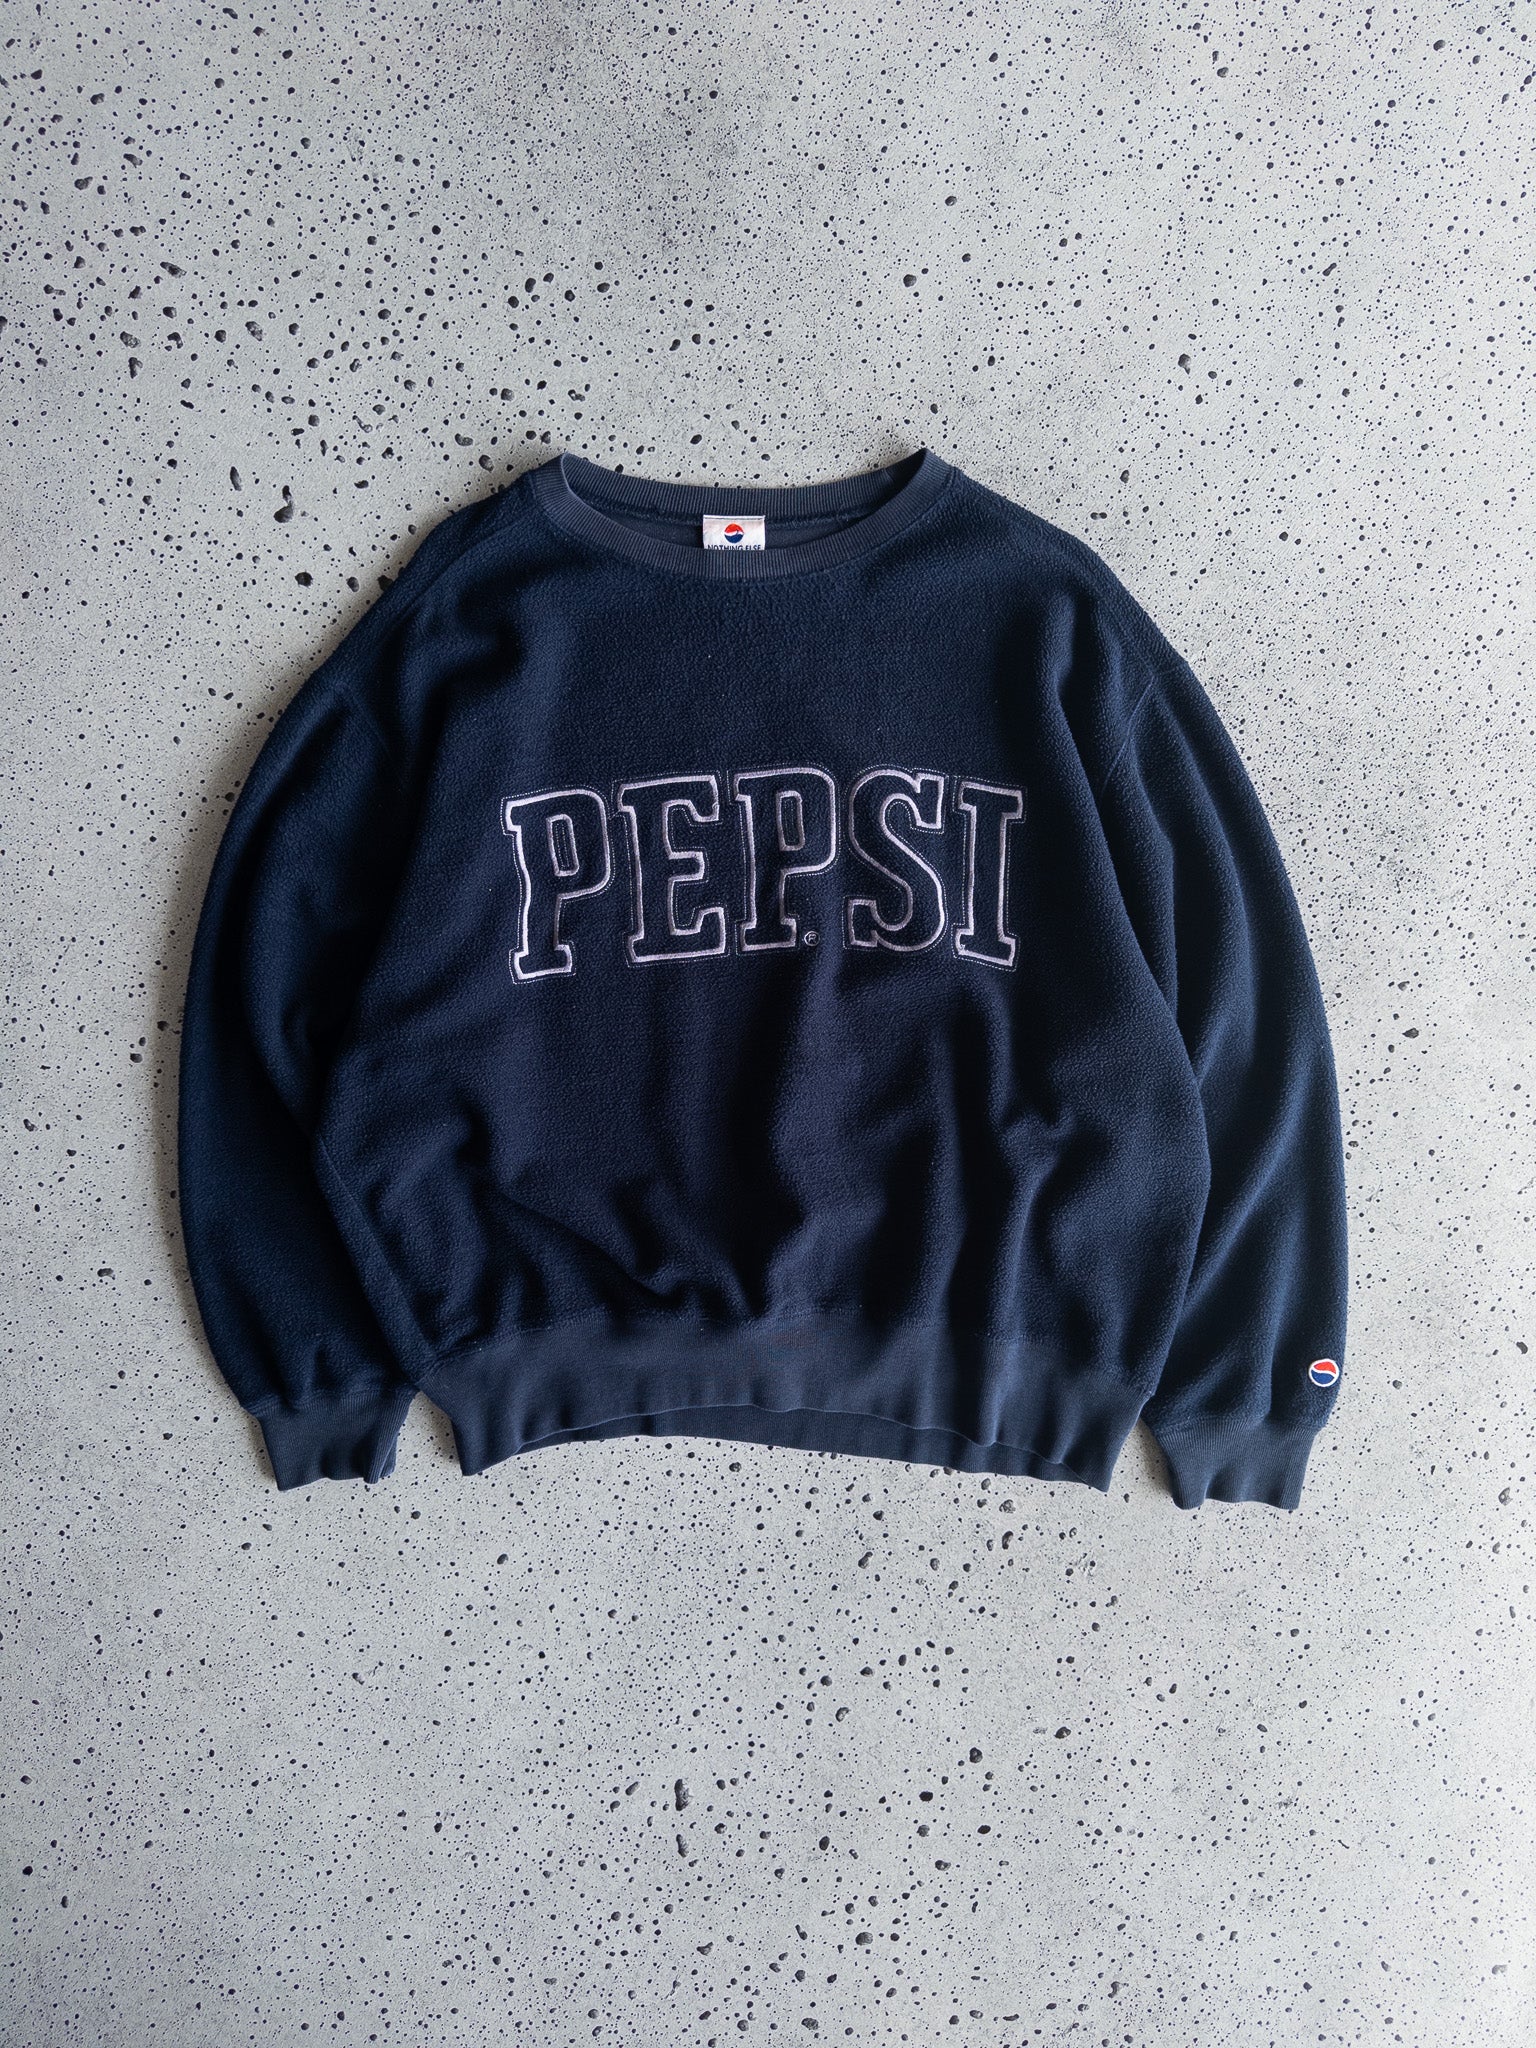 Vintage Pepsi Sweatshirt (L)